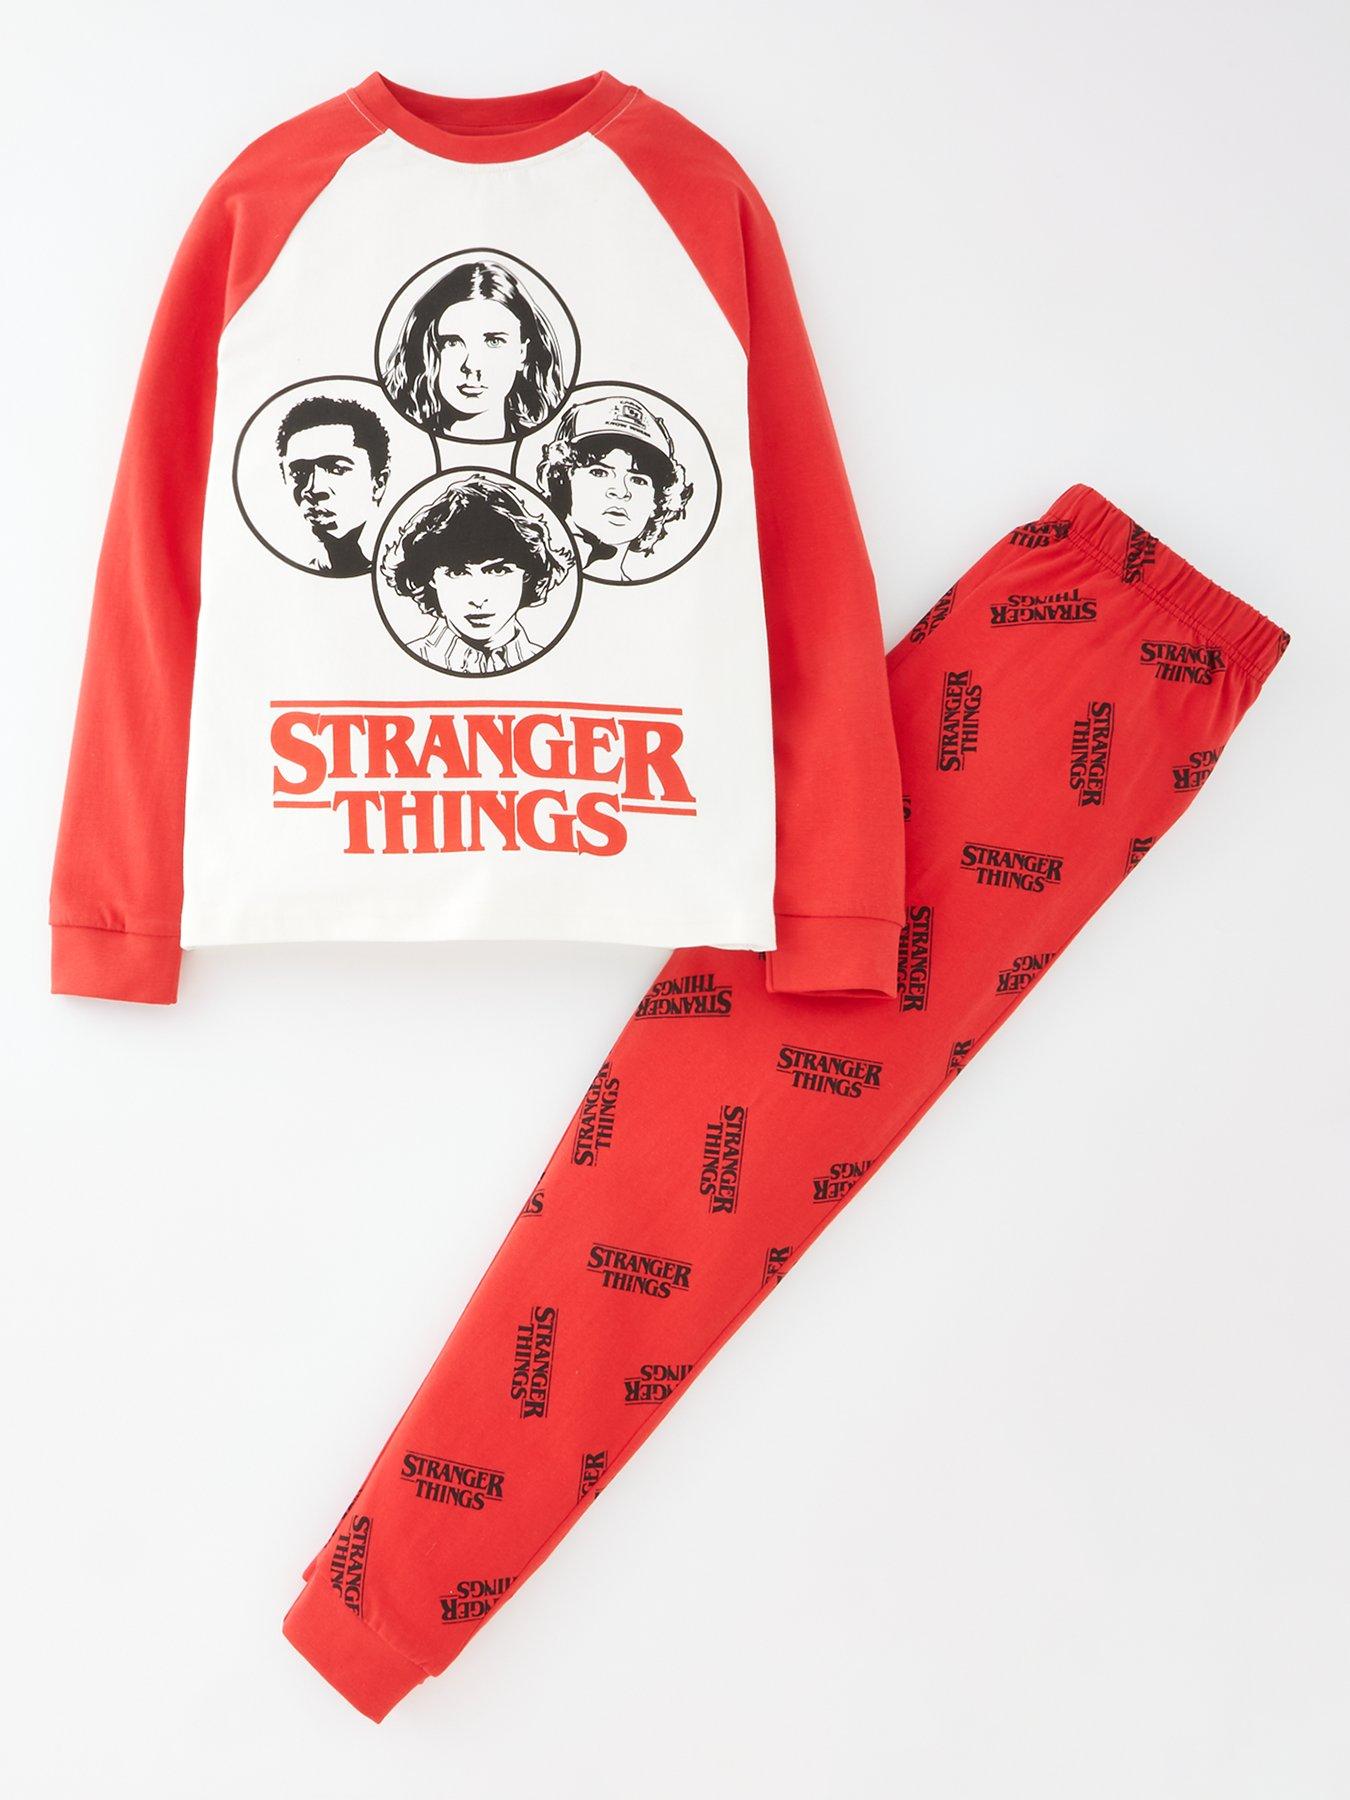 390 Stranger Things <3 ideas  stranger things, stranger, stranger